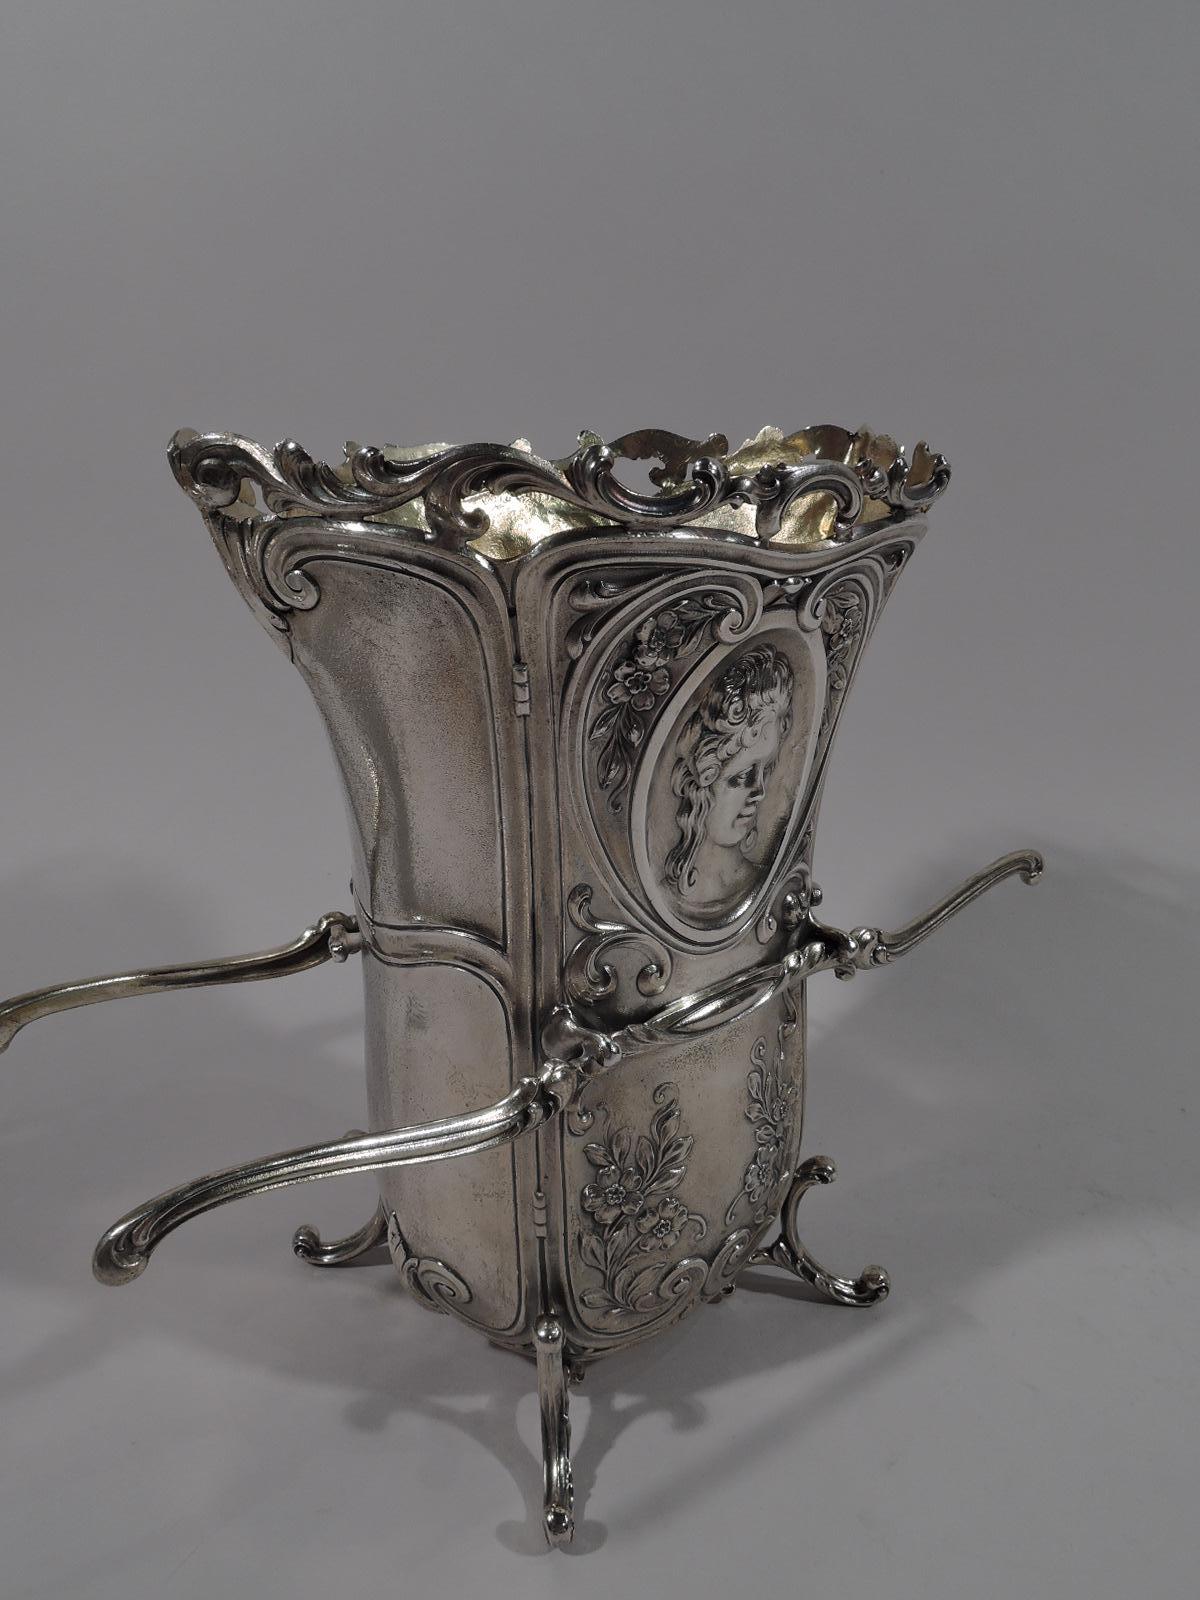 North American Antique Durgin Rococo Revival Sterling Silver Sedan Chair Vase